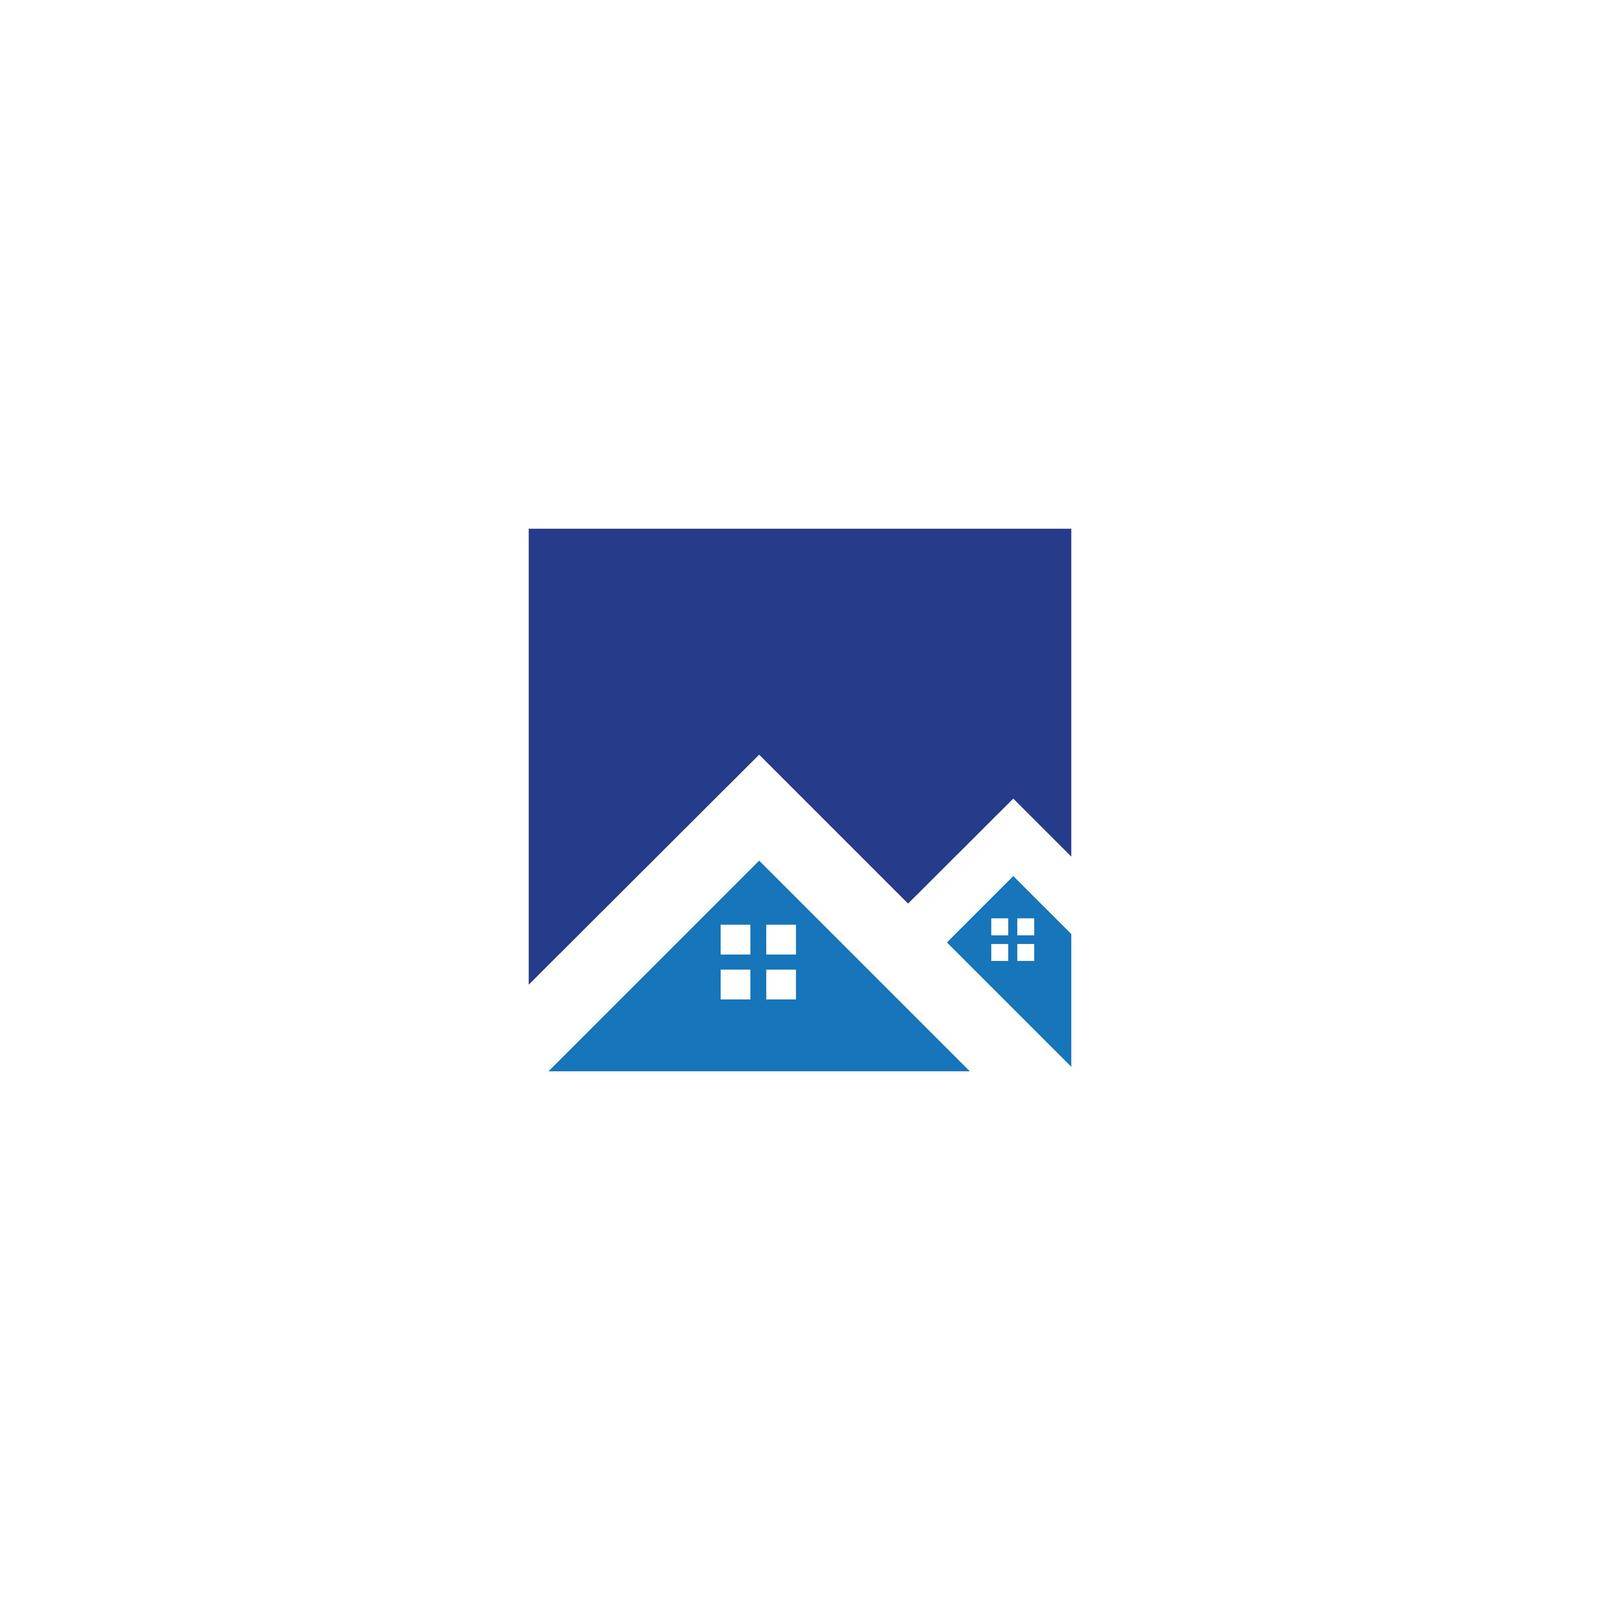 architecture logo design vector template, icon, symbol, house